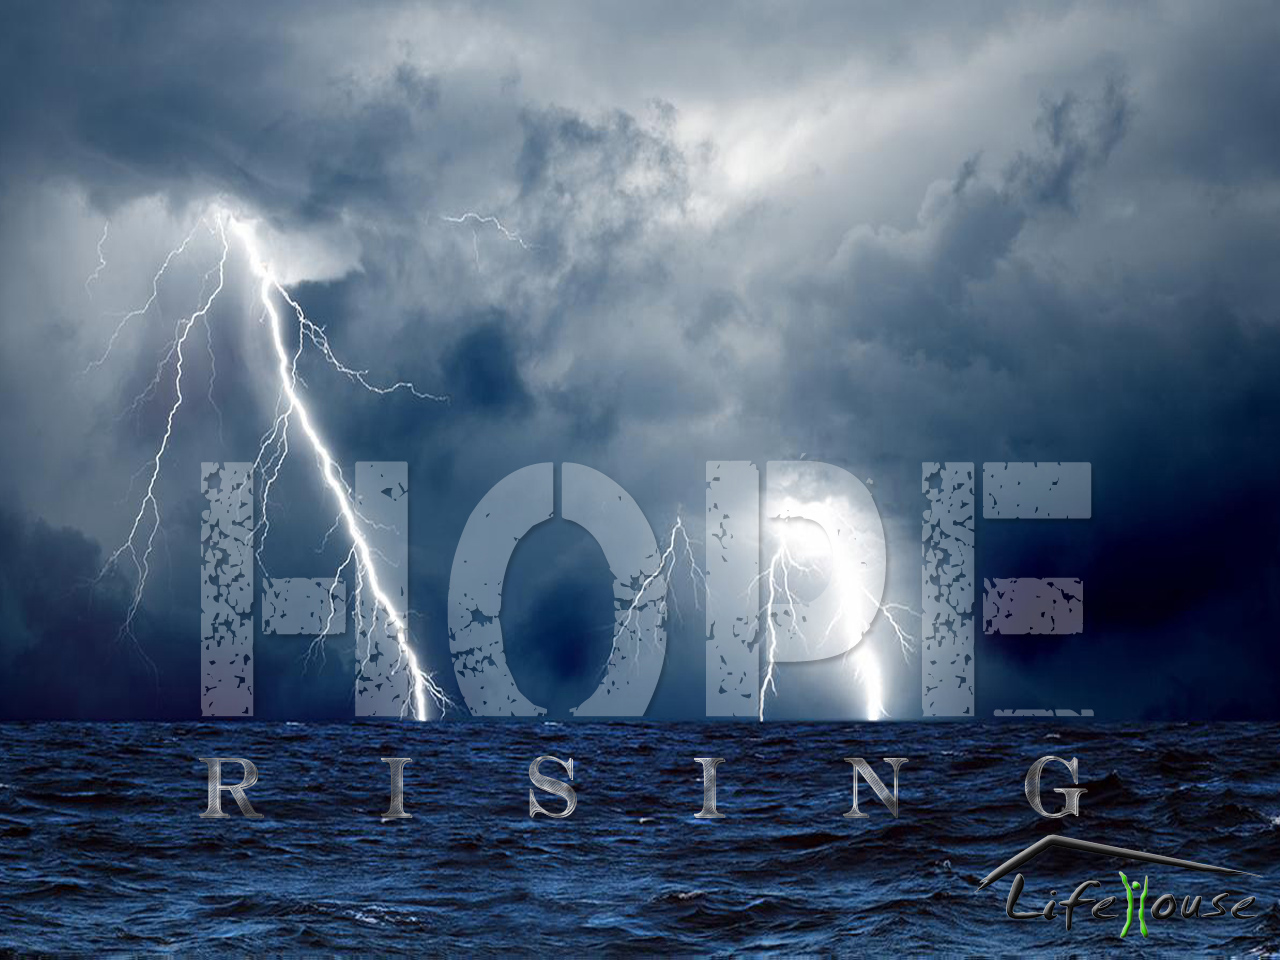 Hope Rising